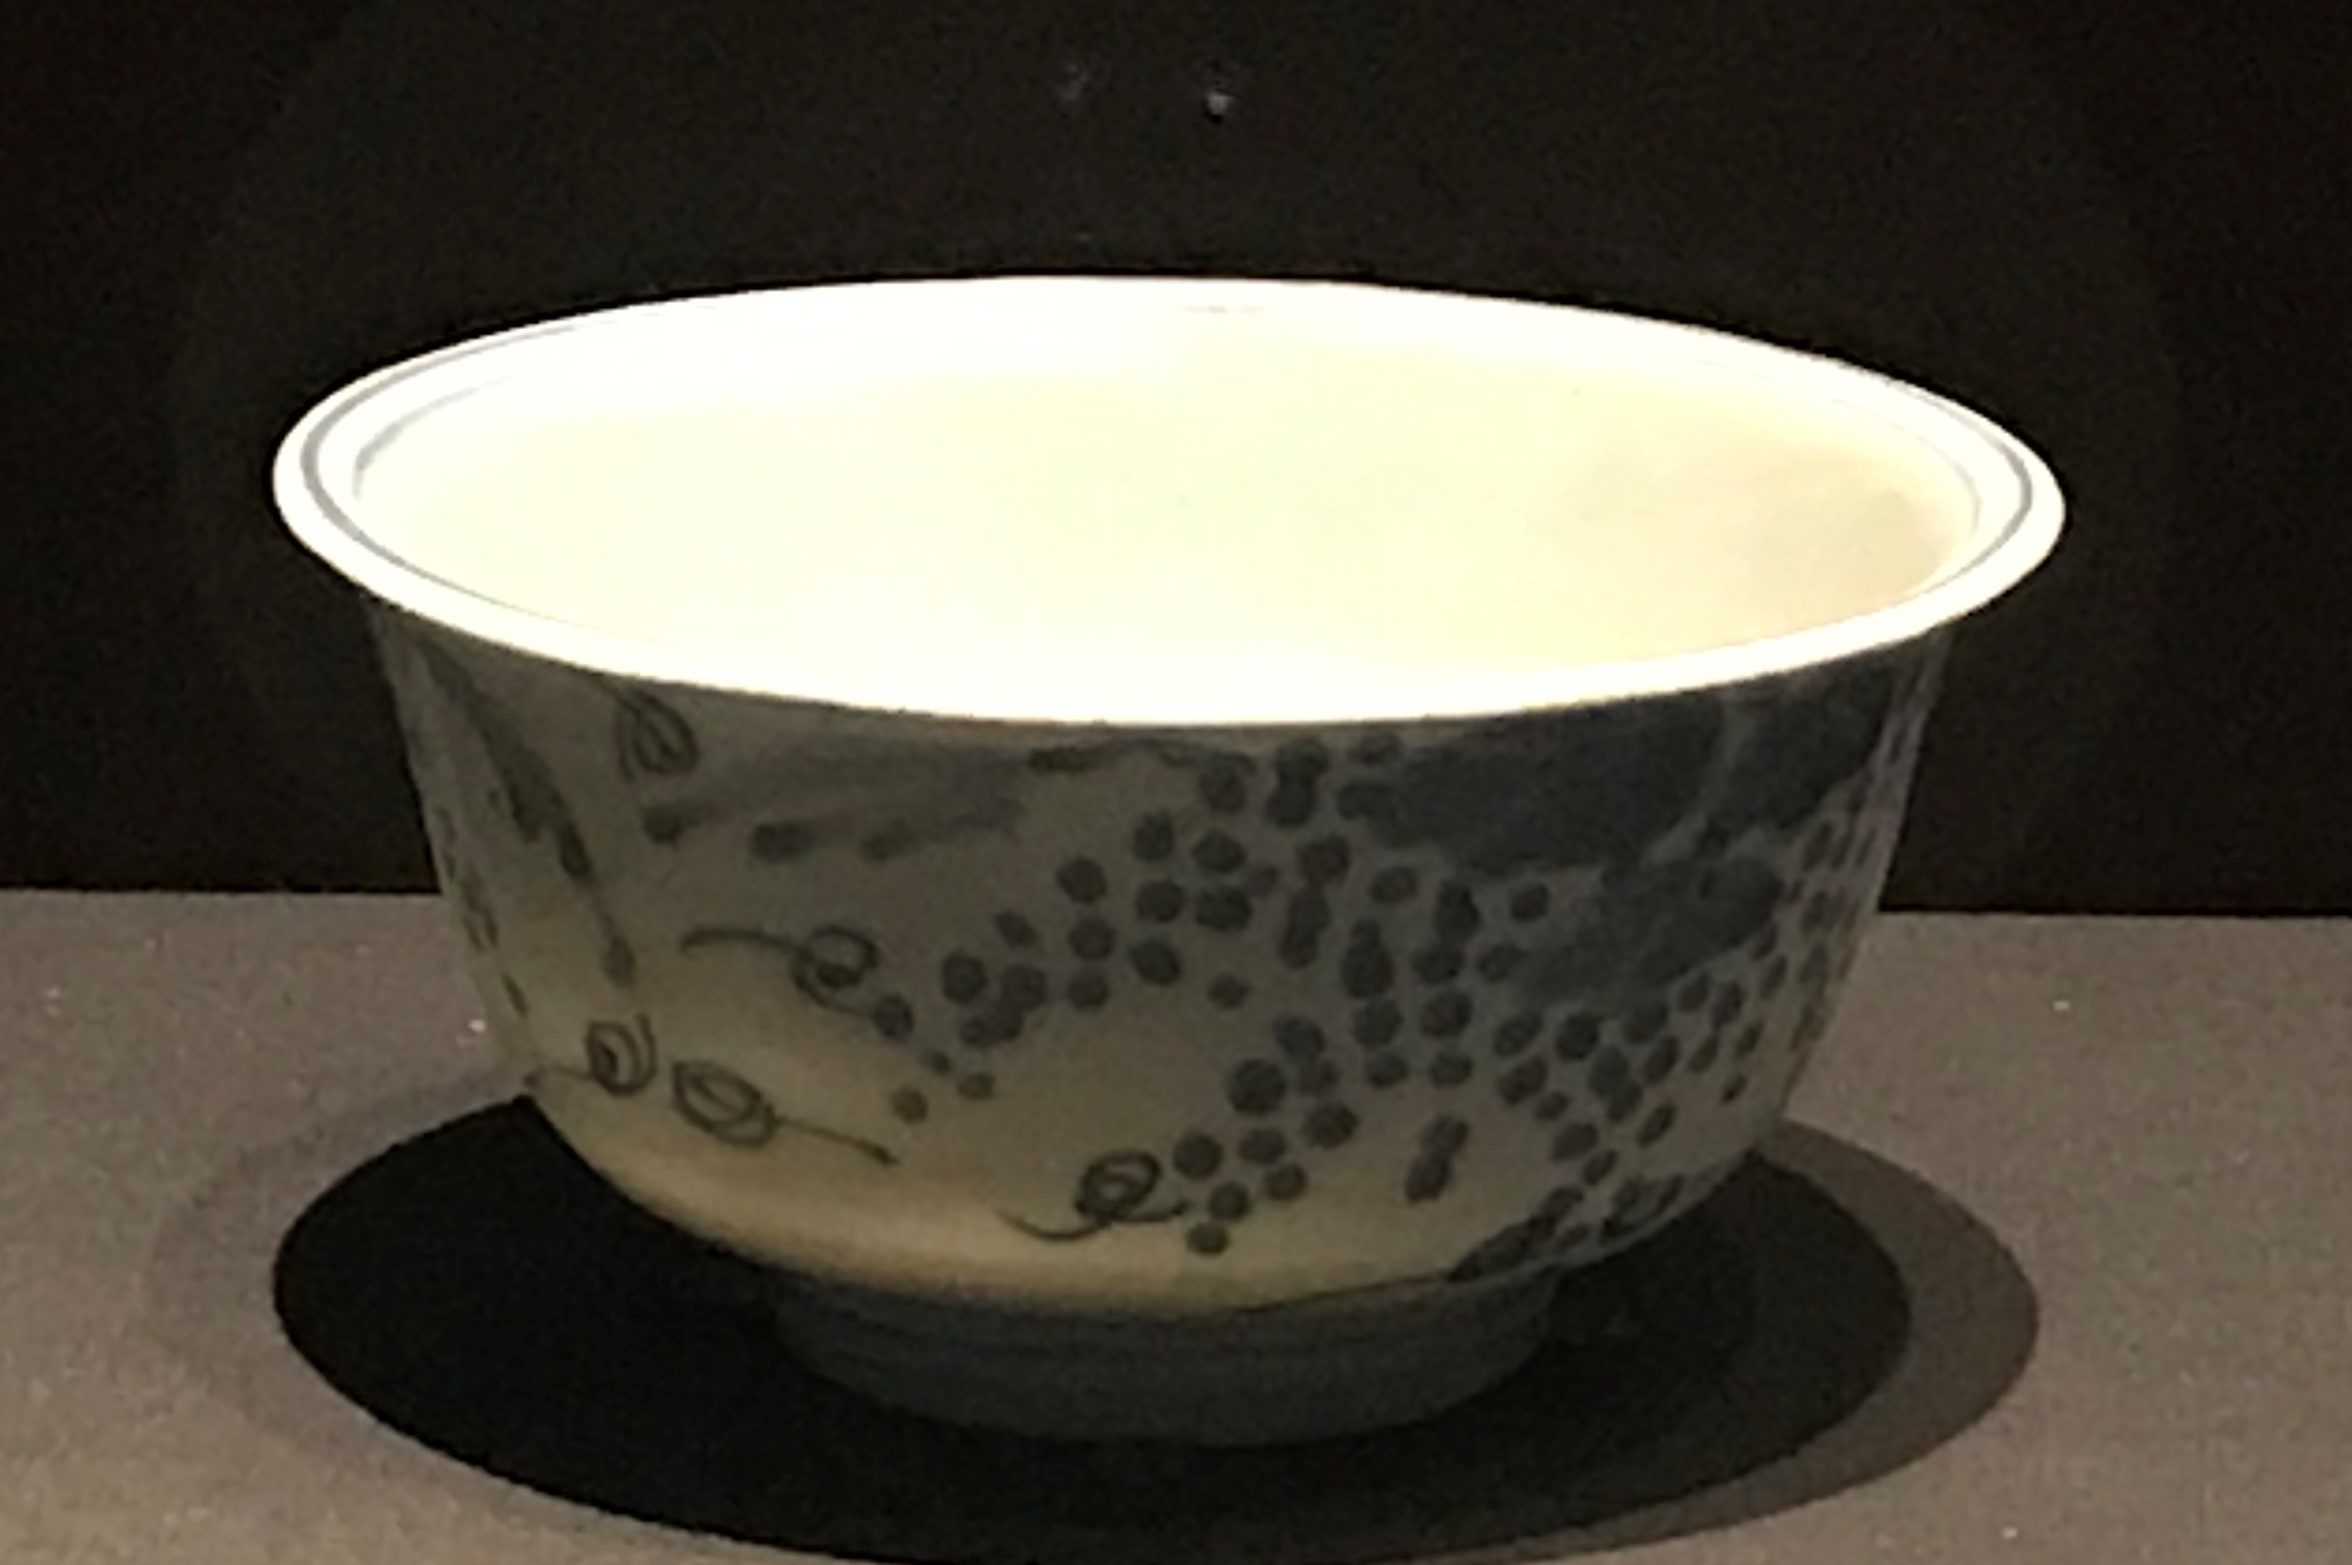  青花葡萄紋磁碗-明清時代-常設展F３-成都博物館